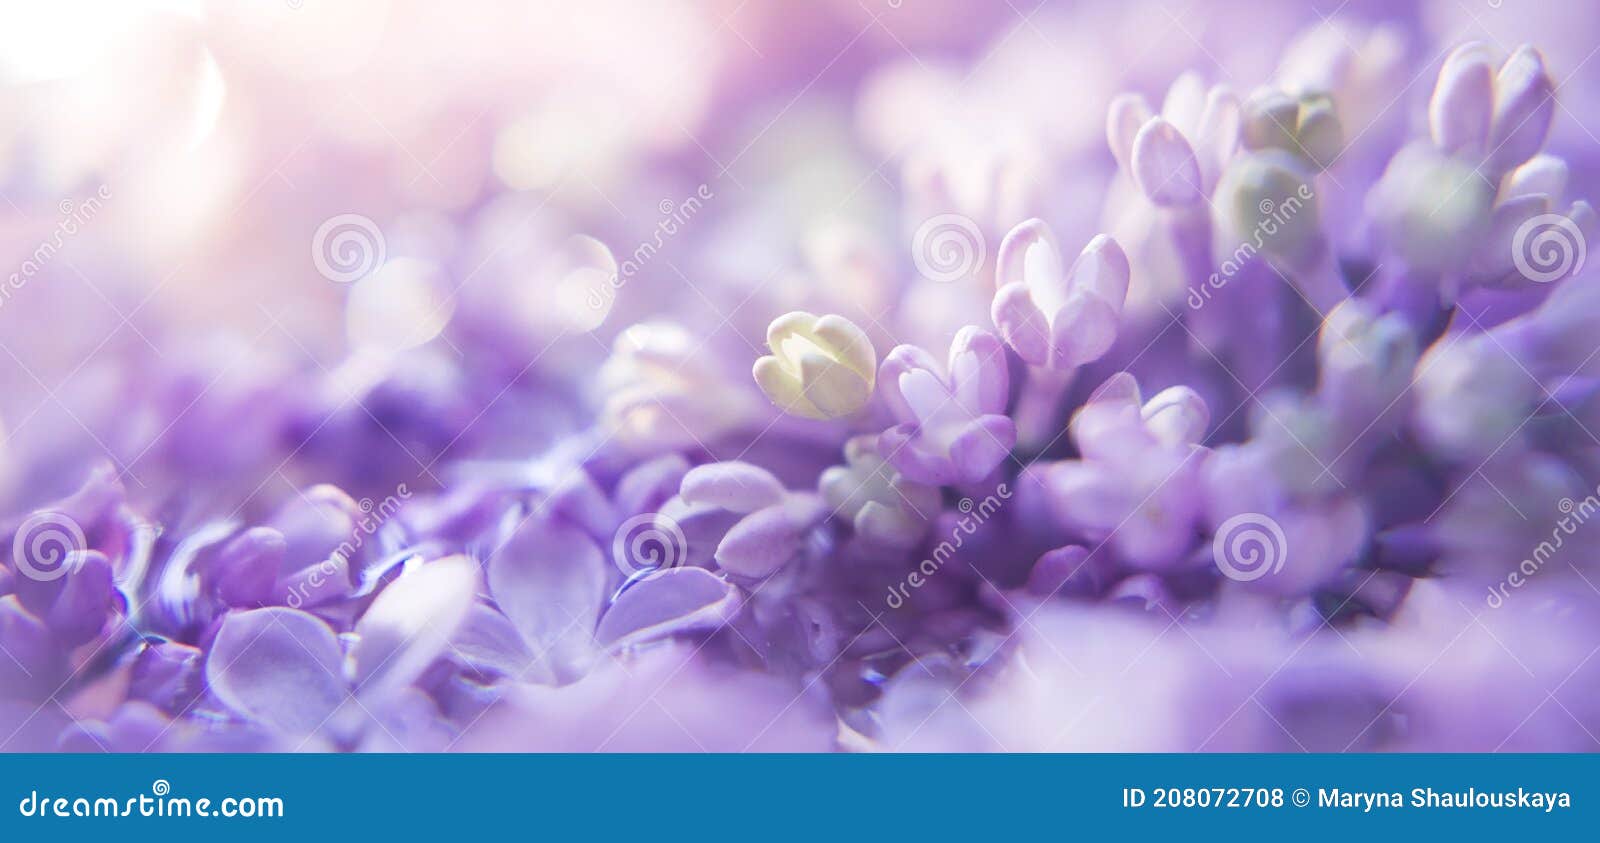 Bộ sưu tập họa tiết hoa tím sắc nét và tinh tế sẽ khiến bạn say đắm ngay từ cái nhìn đầu tiên. Từng nét hoa được thiết kế một cách tỉ mỉ, tạo ra một không gian thanh tao và đầy sức sống. Hãy xem và chiêm ngưỡng những họa tiết hoa tím đẹp nhất tại đây.